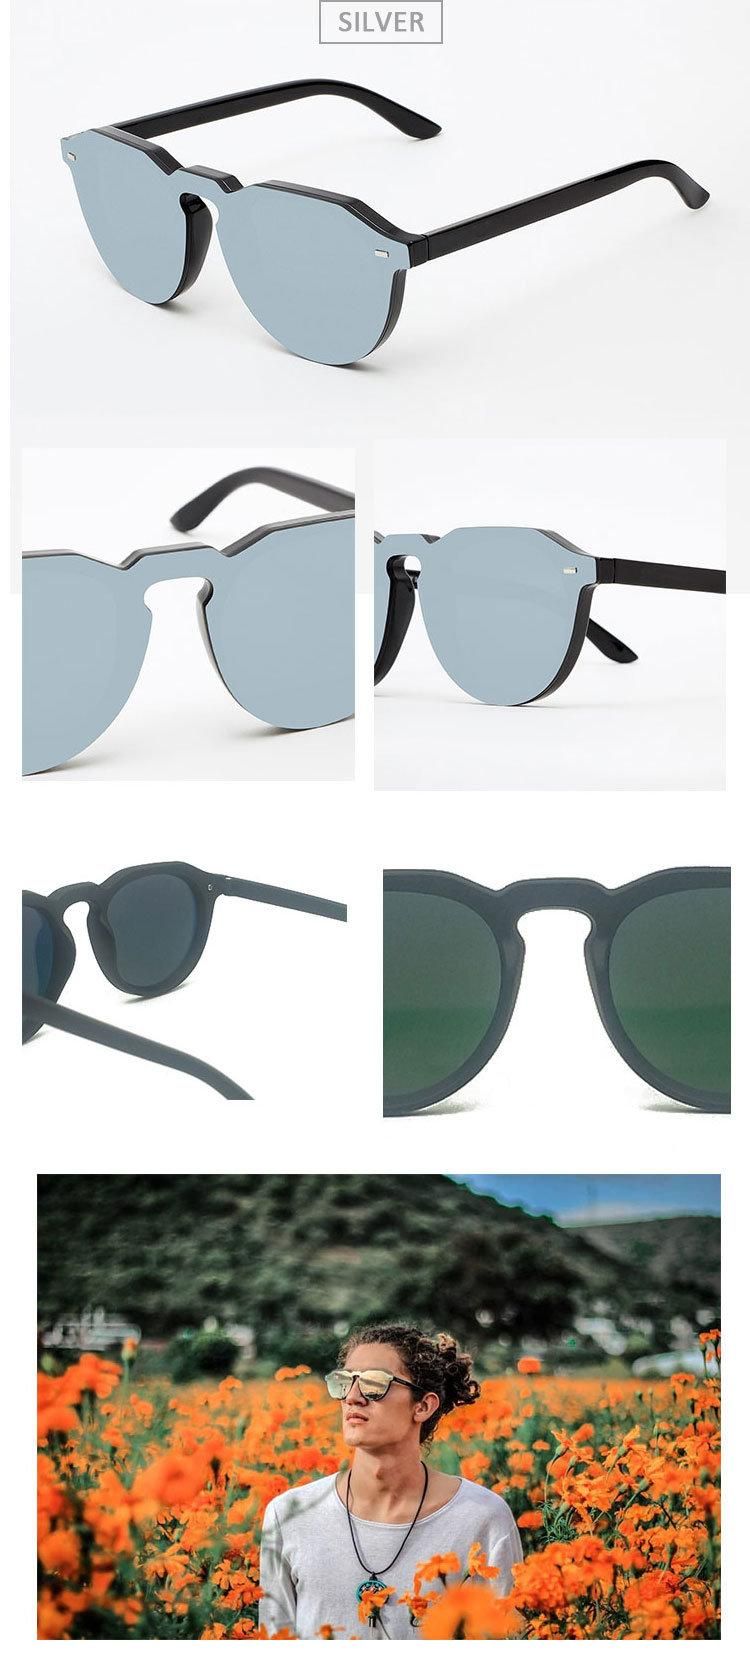 Free Sample Custom Adult Fashion Sun Glasses Polarized Sunglasses